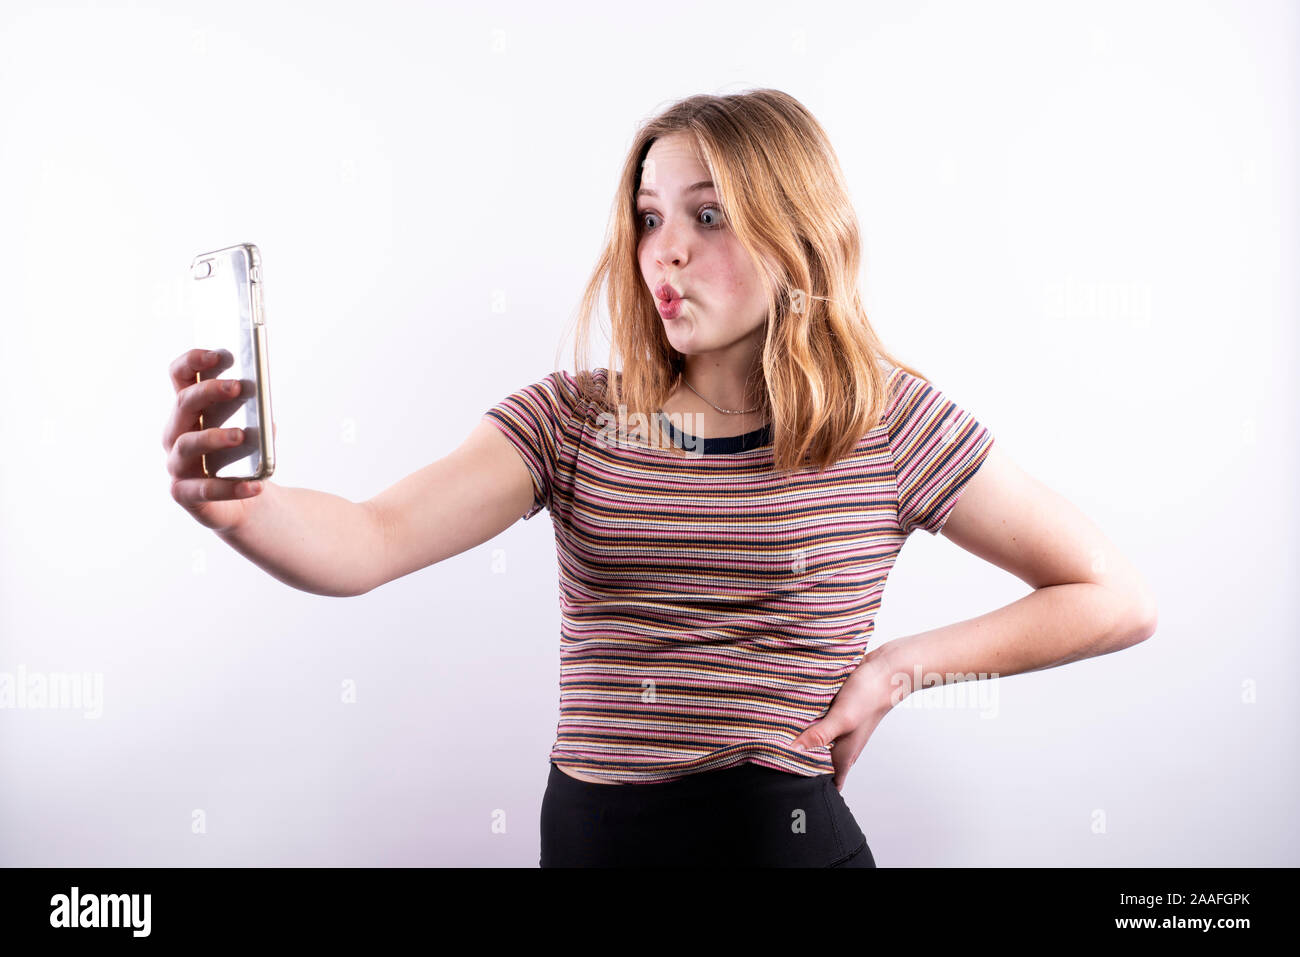 Caucasian ragazza adolescente che indossa un rigato orizzontale T-shirt con un bacio espressione e occhi spalancati mentre prendendo un selfie con uno smartphone Foto Stock